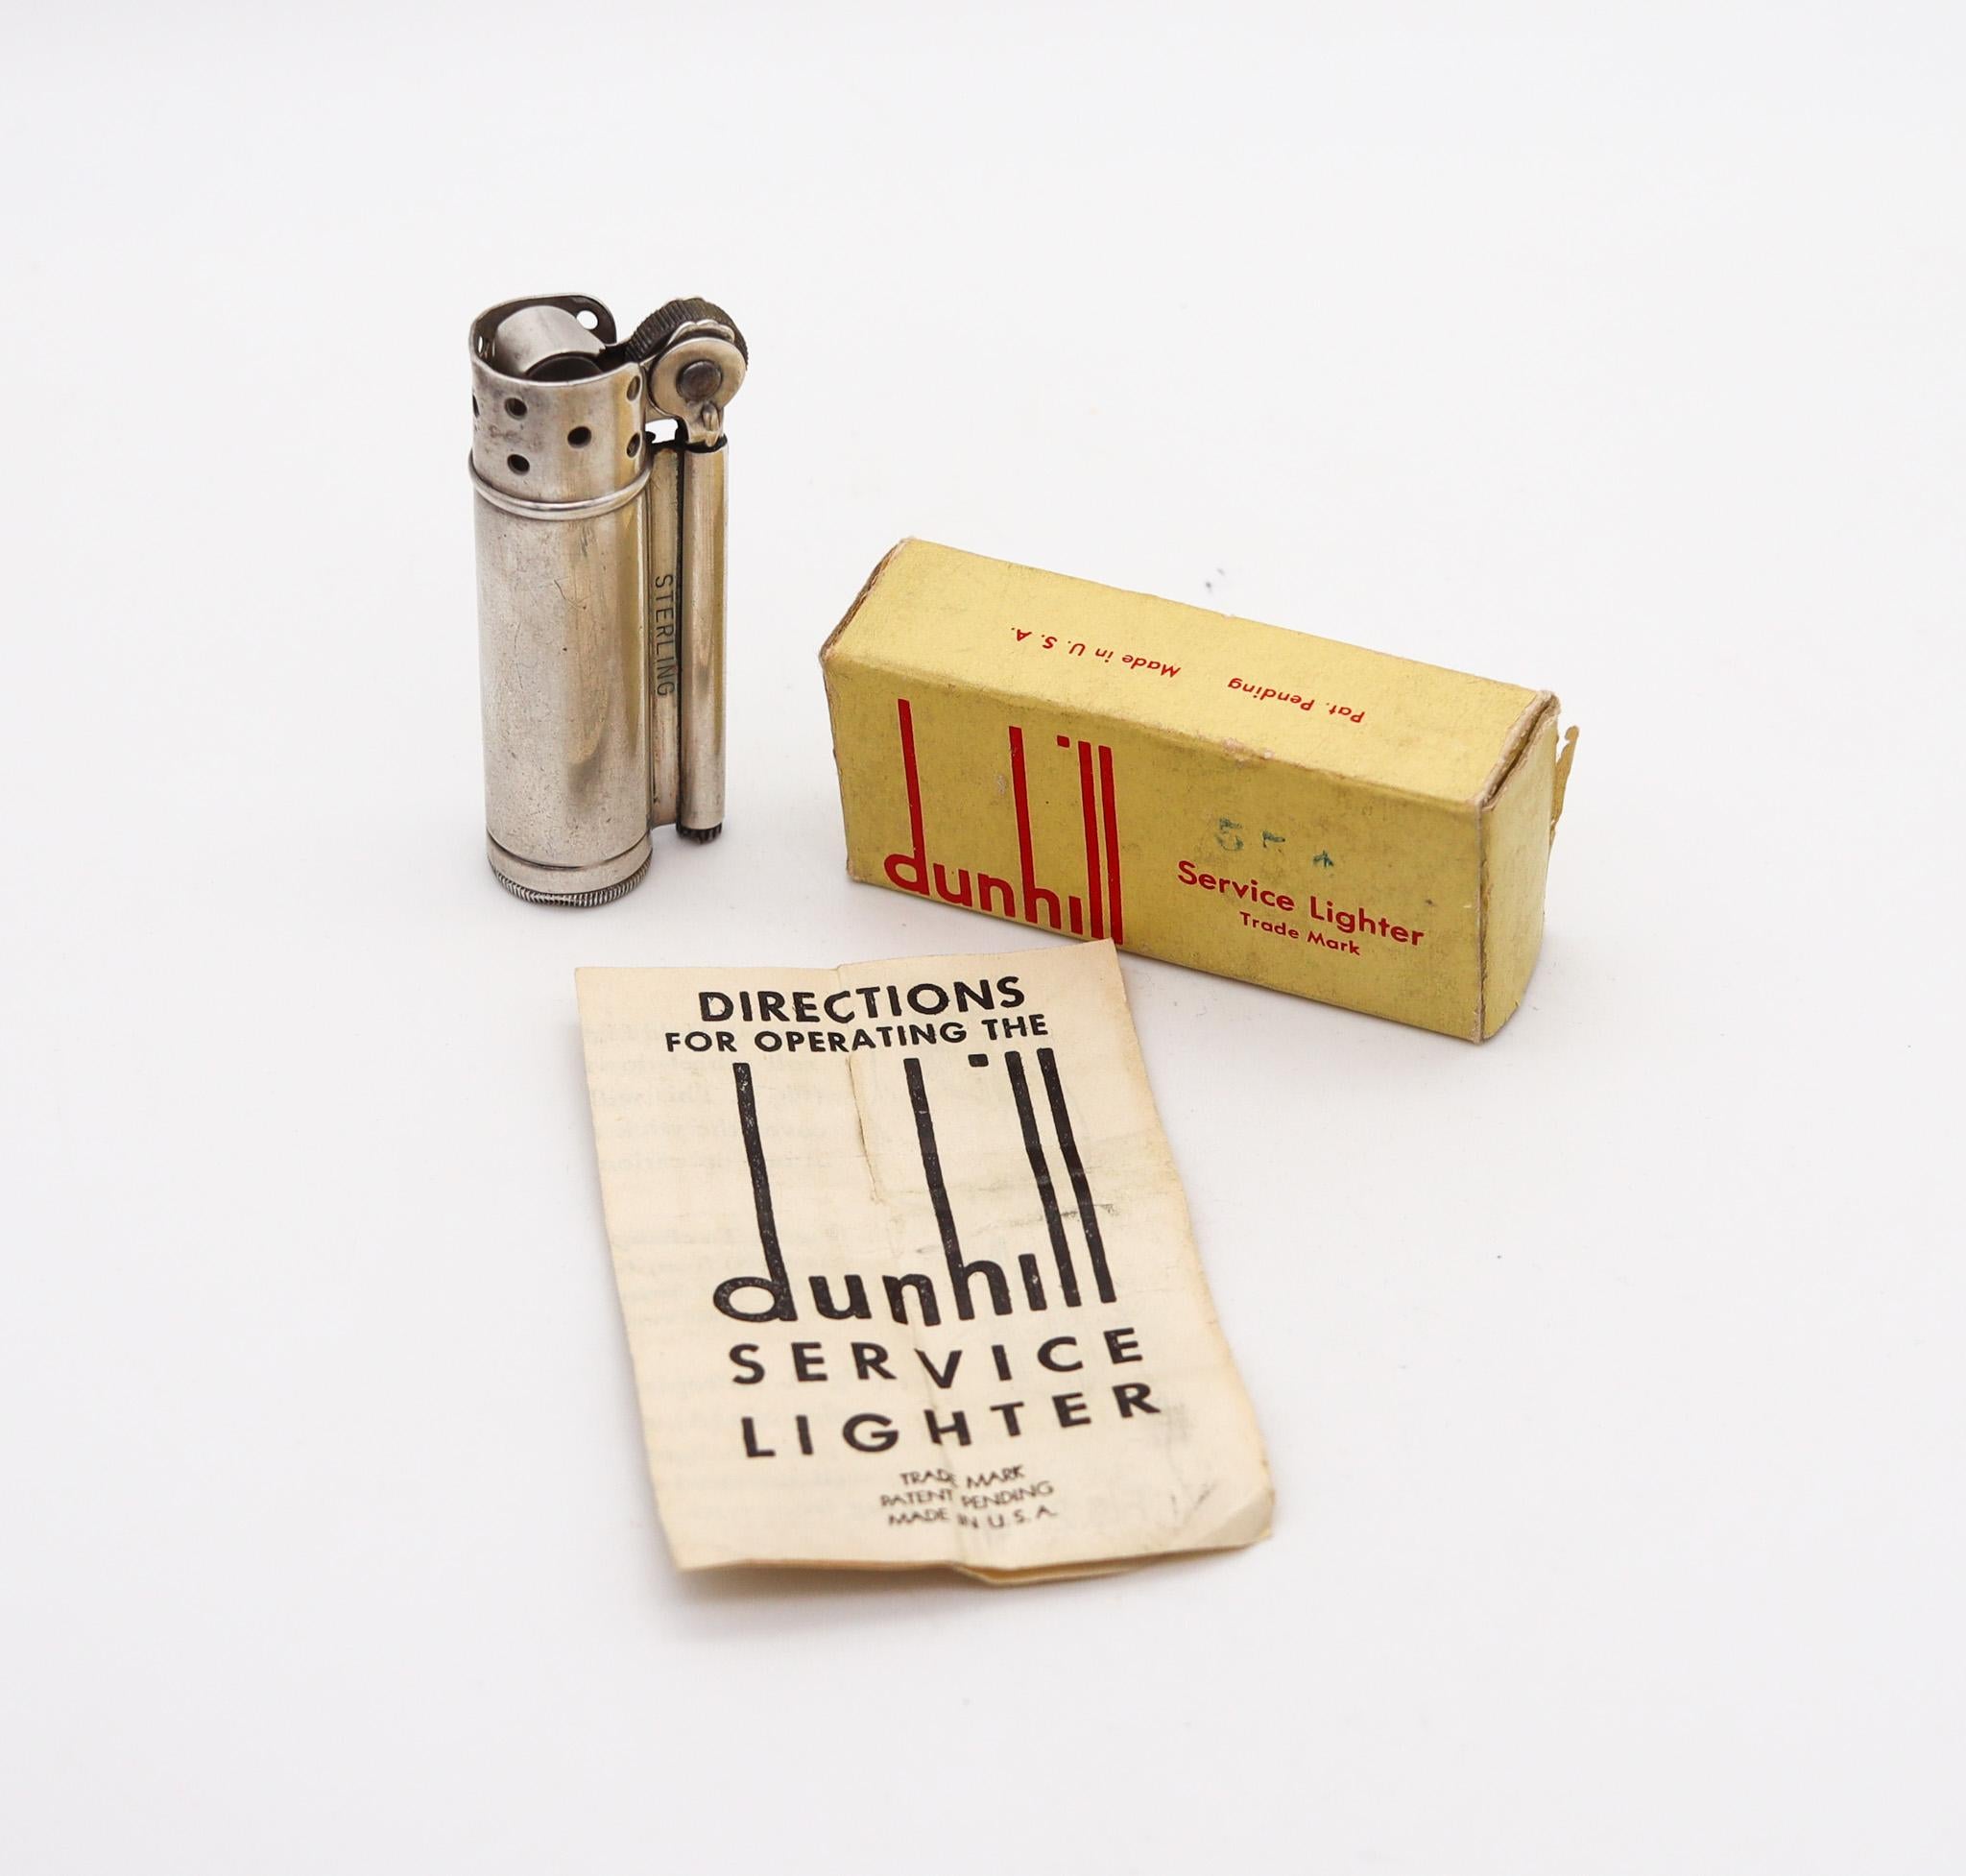 Ein von Alfred Dunhill entworfenes Service-Feuerzeug

Ein schönes militärisches amerikanisches Dienstfeuerzeug, das von den Tochtergesellschaften von Alfred Dunhill in den Vereinigten Staaten während des Zweiten Weltkriegs zwischen 1944 und 1947